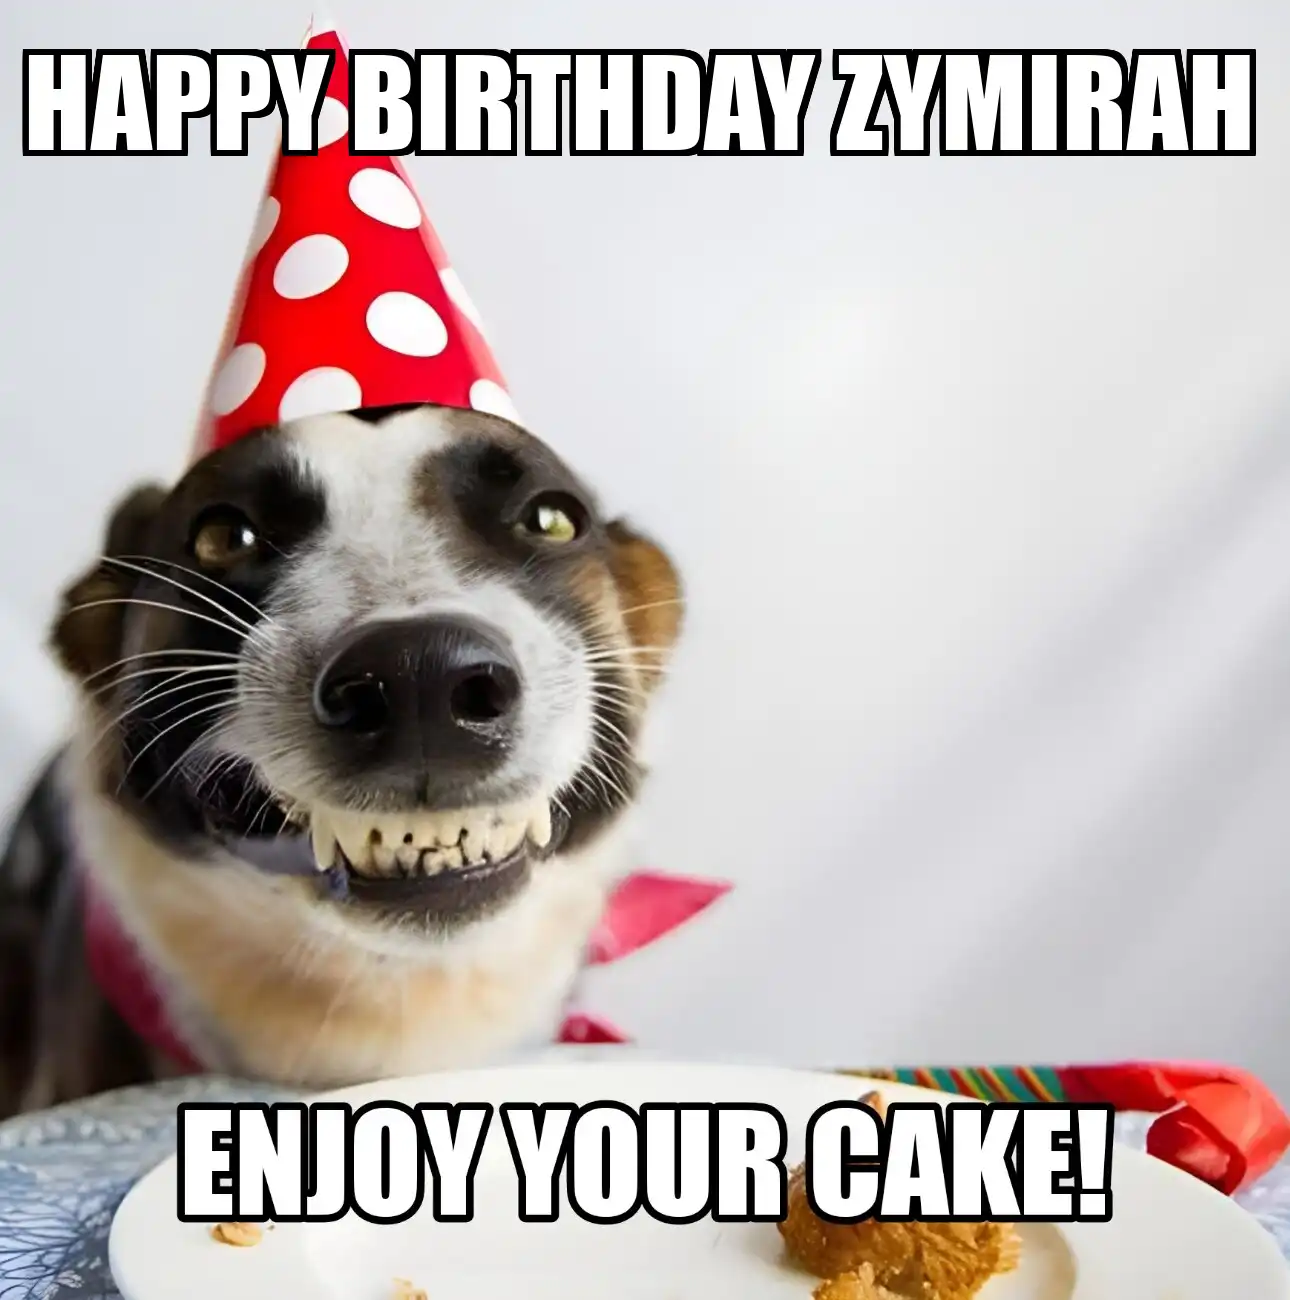 Happy Birthday Zymirah Enjoy Your Cake Dog Meme